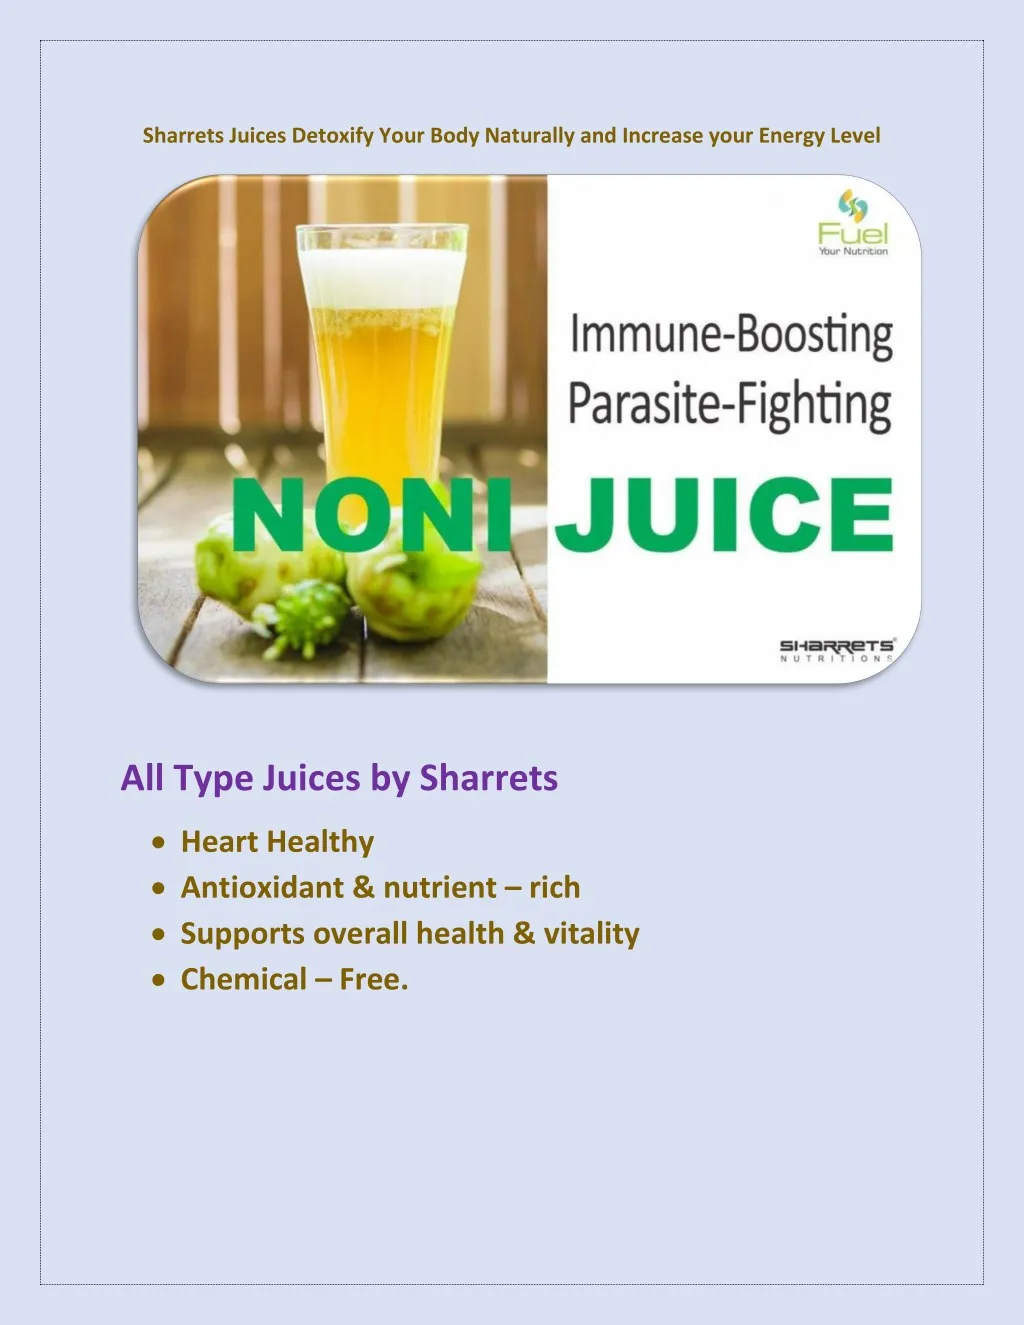 sharrets juices detoxify your body naturally